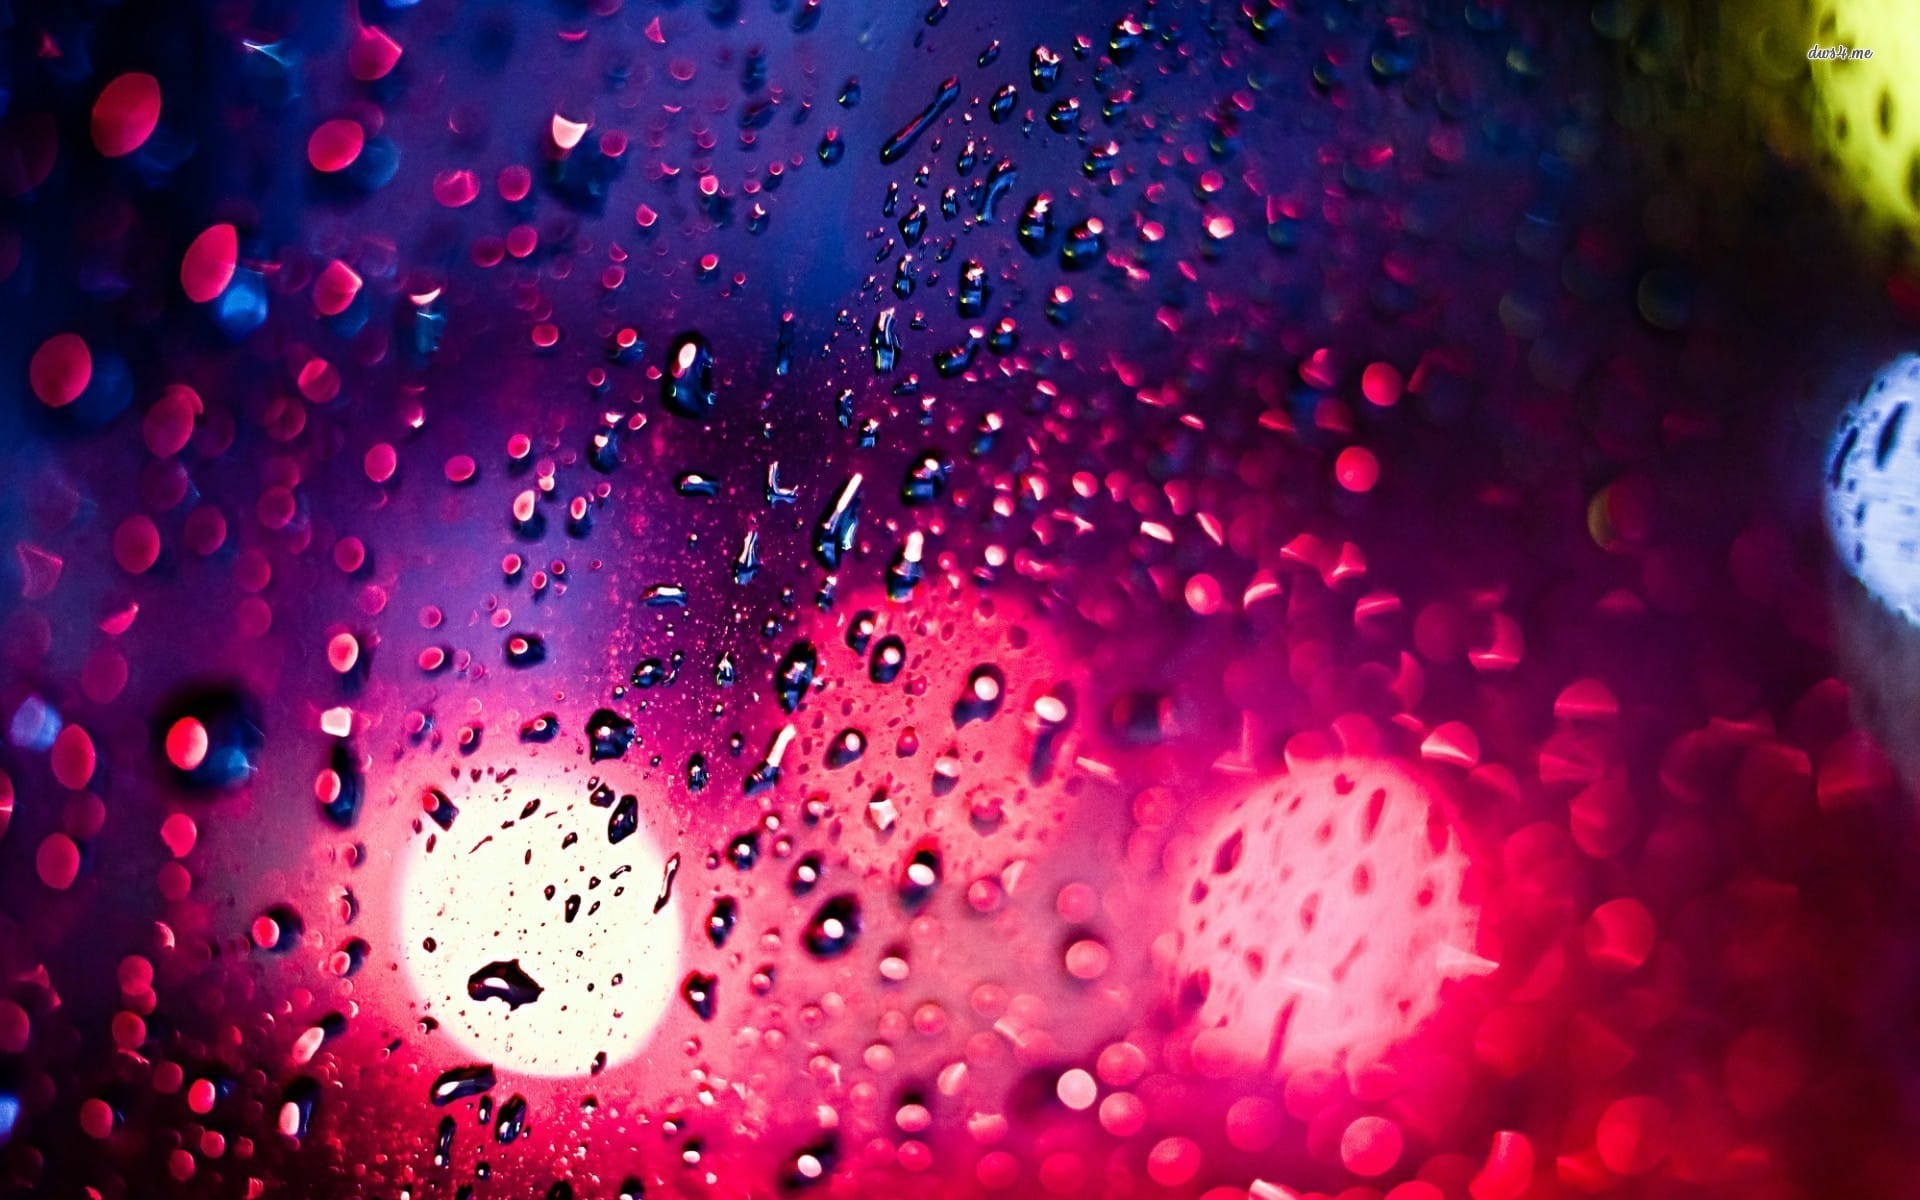 窗外的雨滴淅淅沥沥唯美壁纸大图